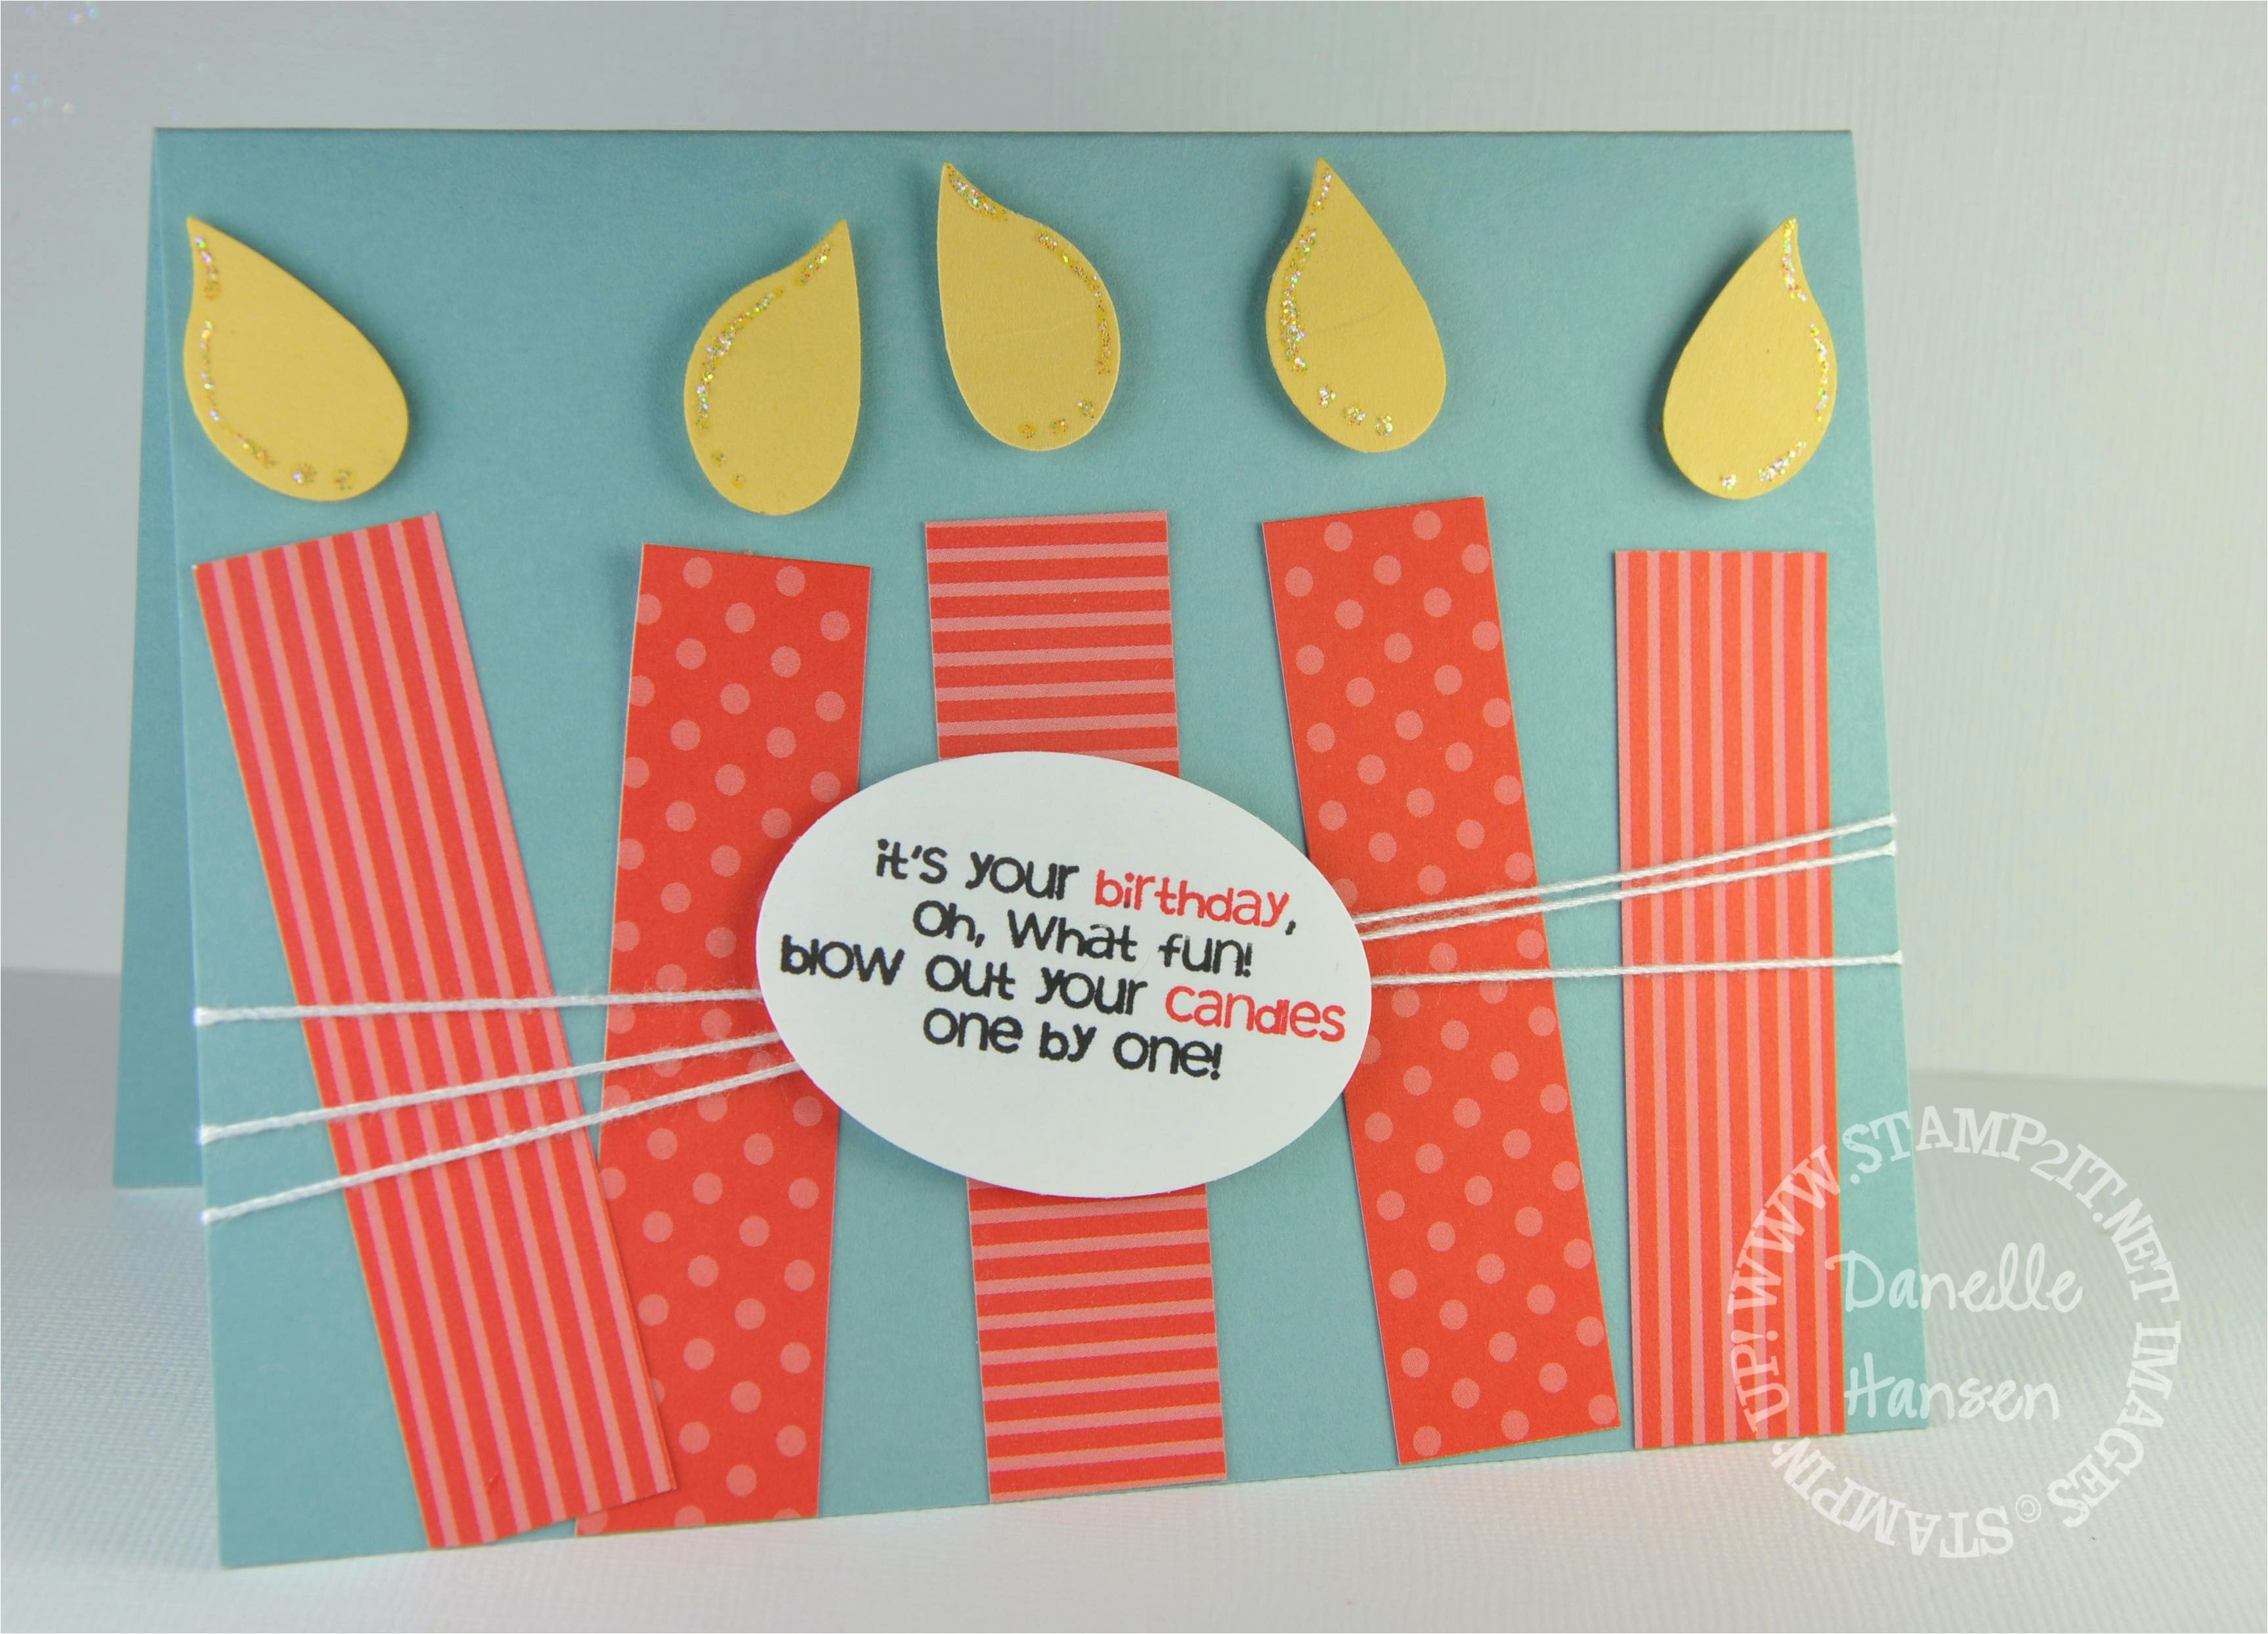 Creative Ideas For A Birthday Card Diy Birthday Cards For Husband Creative Handmade Birthday Card Ideas